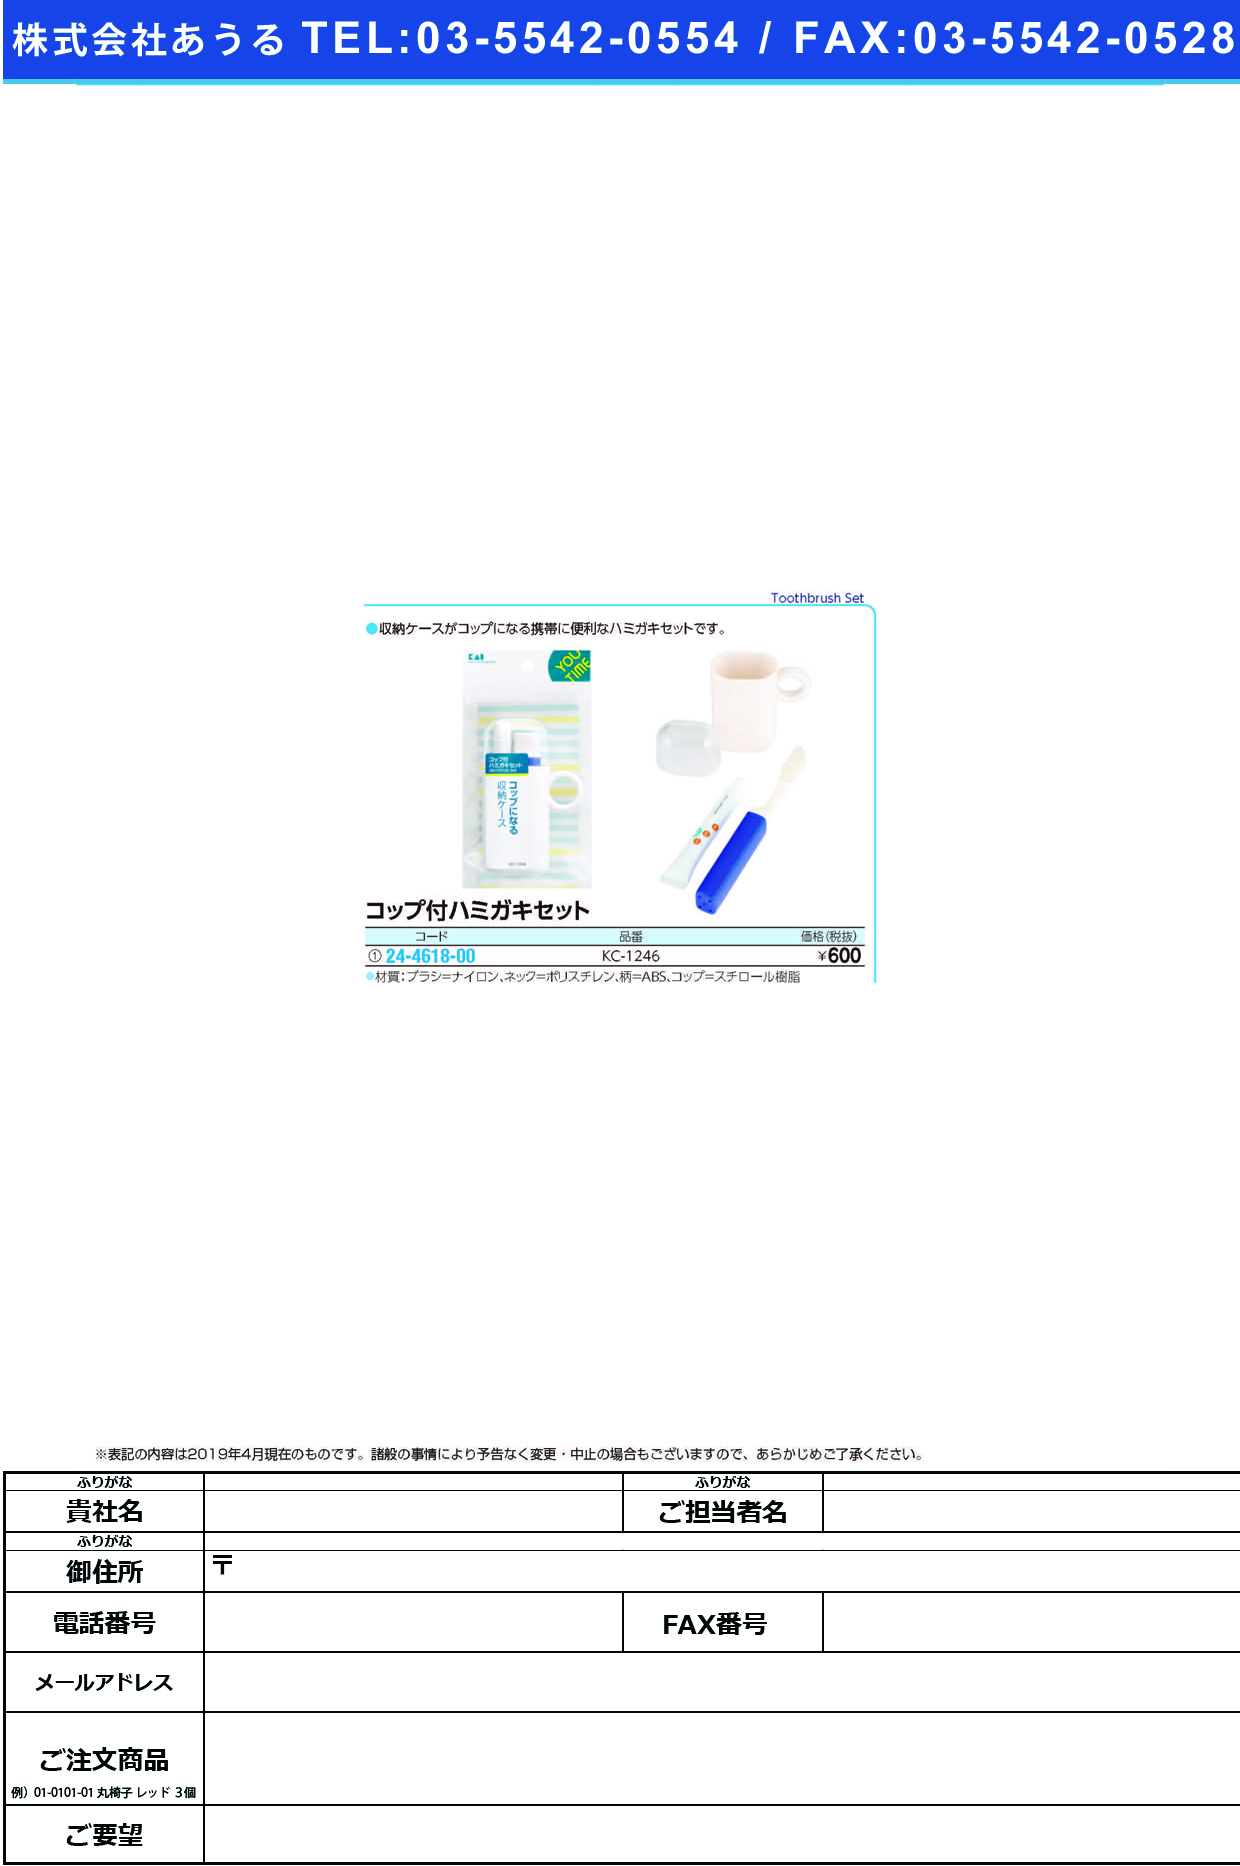 (24-4618-00)コップ付ハミガキセット KC-1246 ｺｯﾌﾟﾂｷﾊﾐｶﾞｷｾｯﾄ(貝印)【1個単位】【2019年カタログ商品】